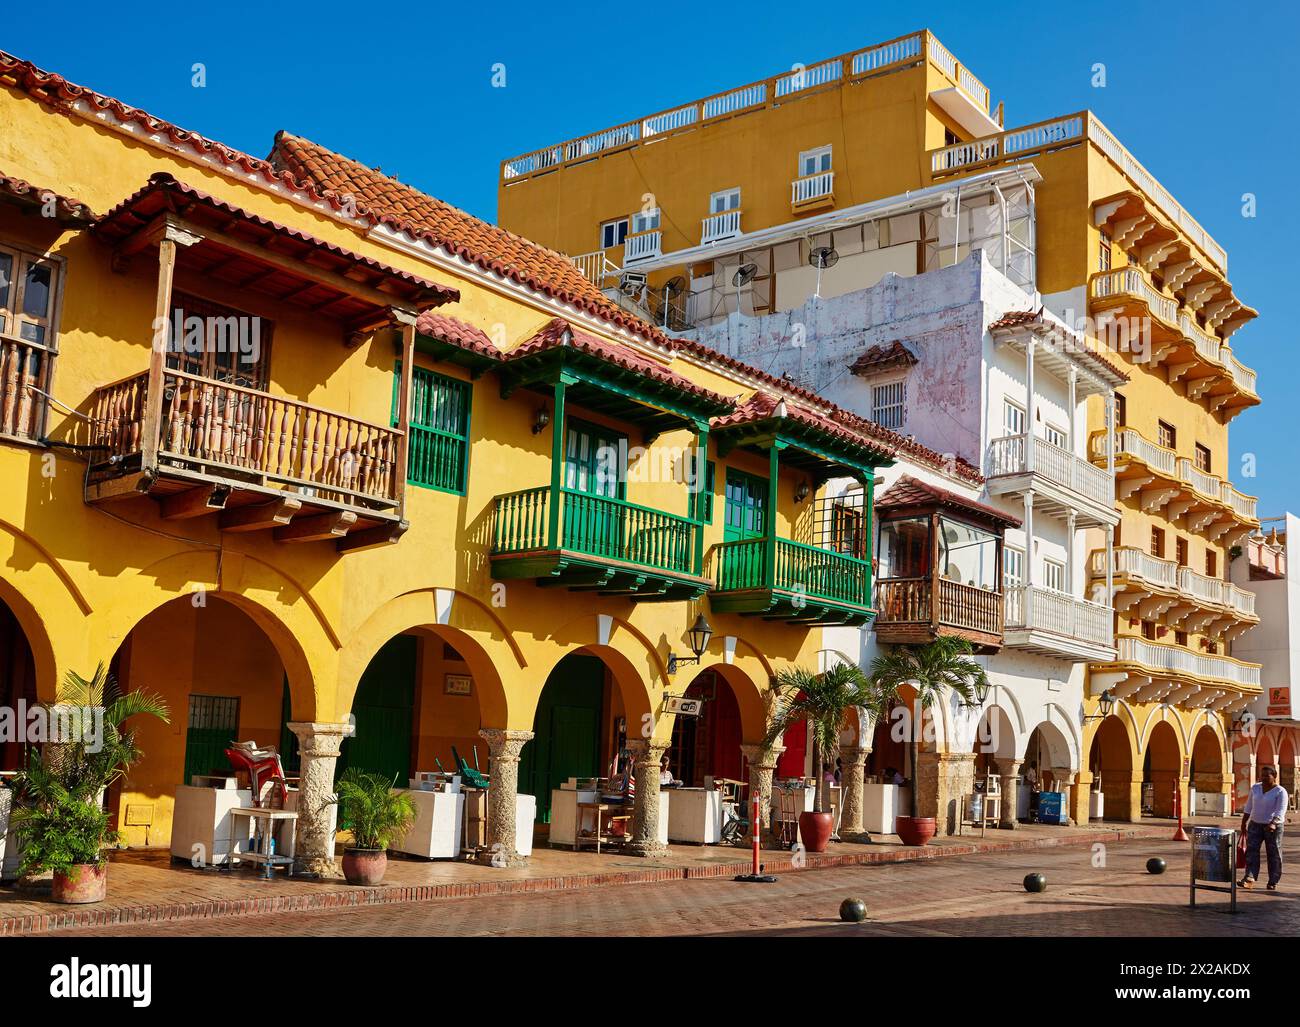 Plaza de Los Coches, Cartagena de Indias, Bolivar, Colombia, South America Stock Photo